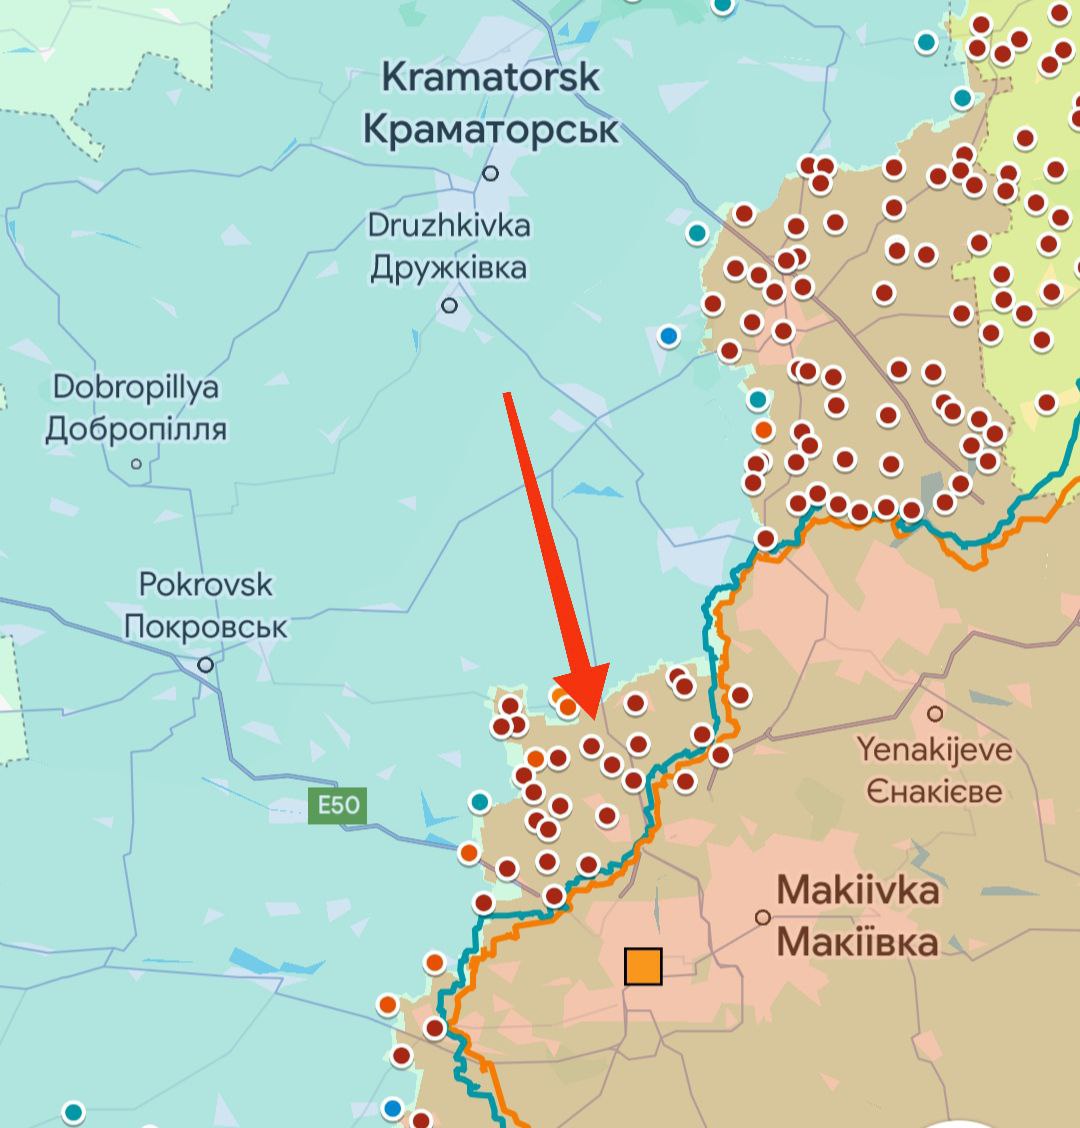 Effondrement de la ligne défensive ukrainienne actuellement dans le Donbass.

Actuellement, la ligne défensive ukrainienne en direction de Semionovka - Berdychi - Solovyov - Arkhangelskoe - Keramik dans le Donbass s'effondre.

Plusieurs colonies tombent sous contrôle russe en